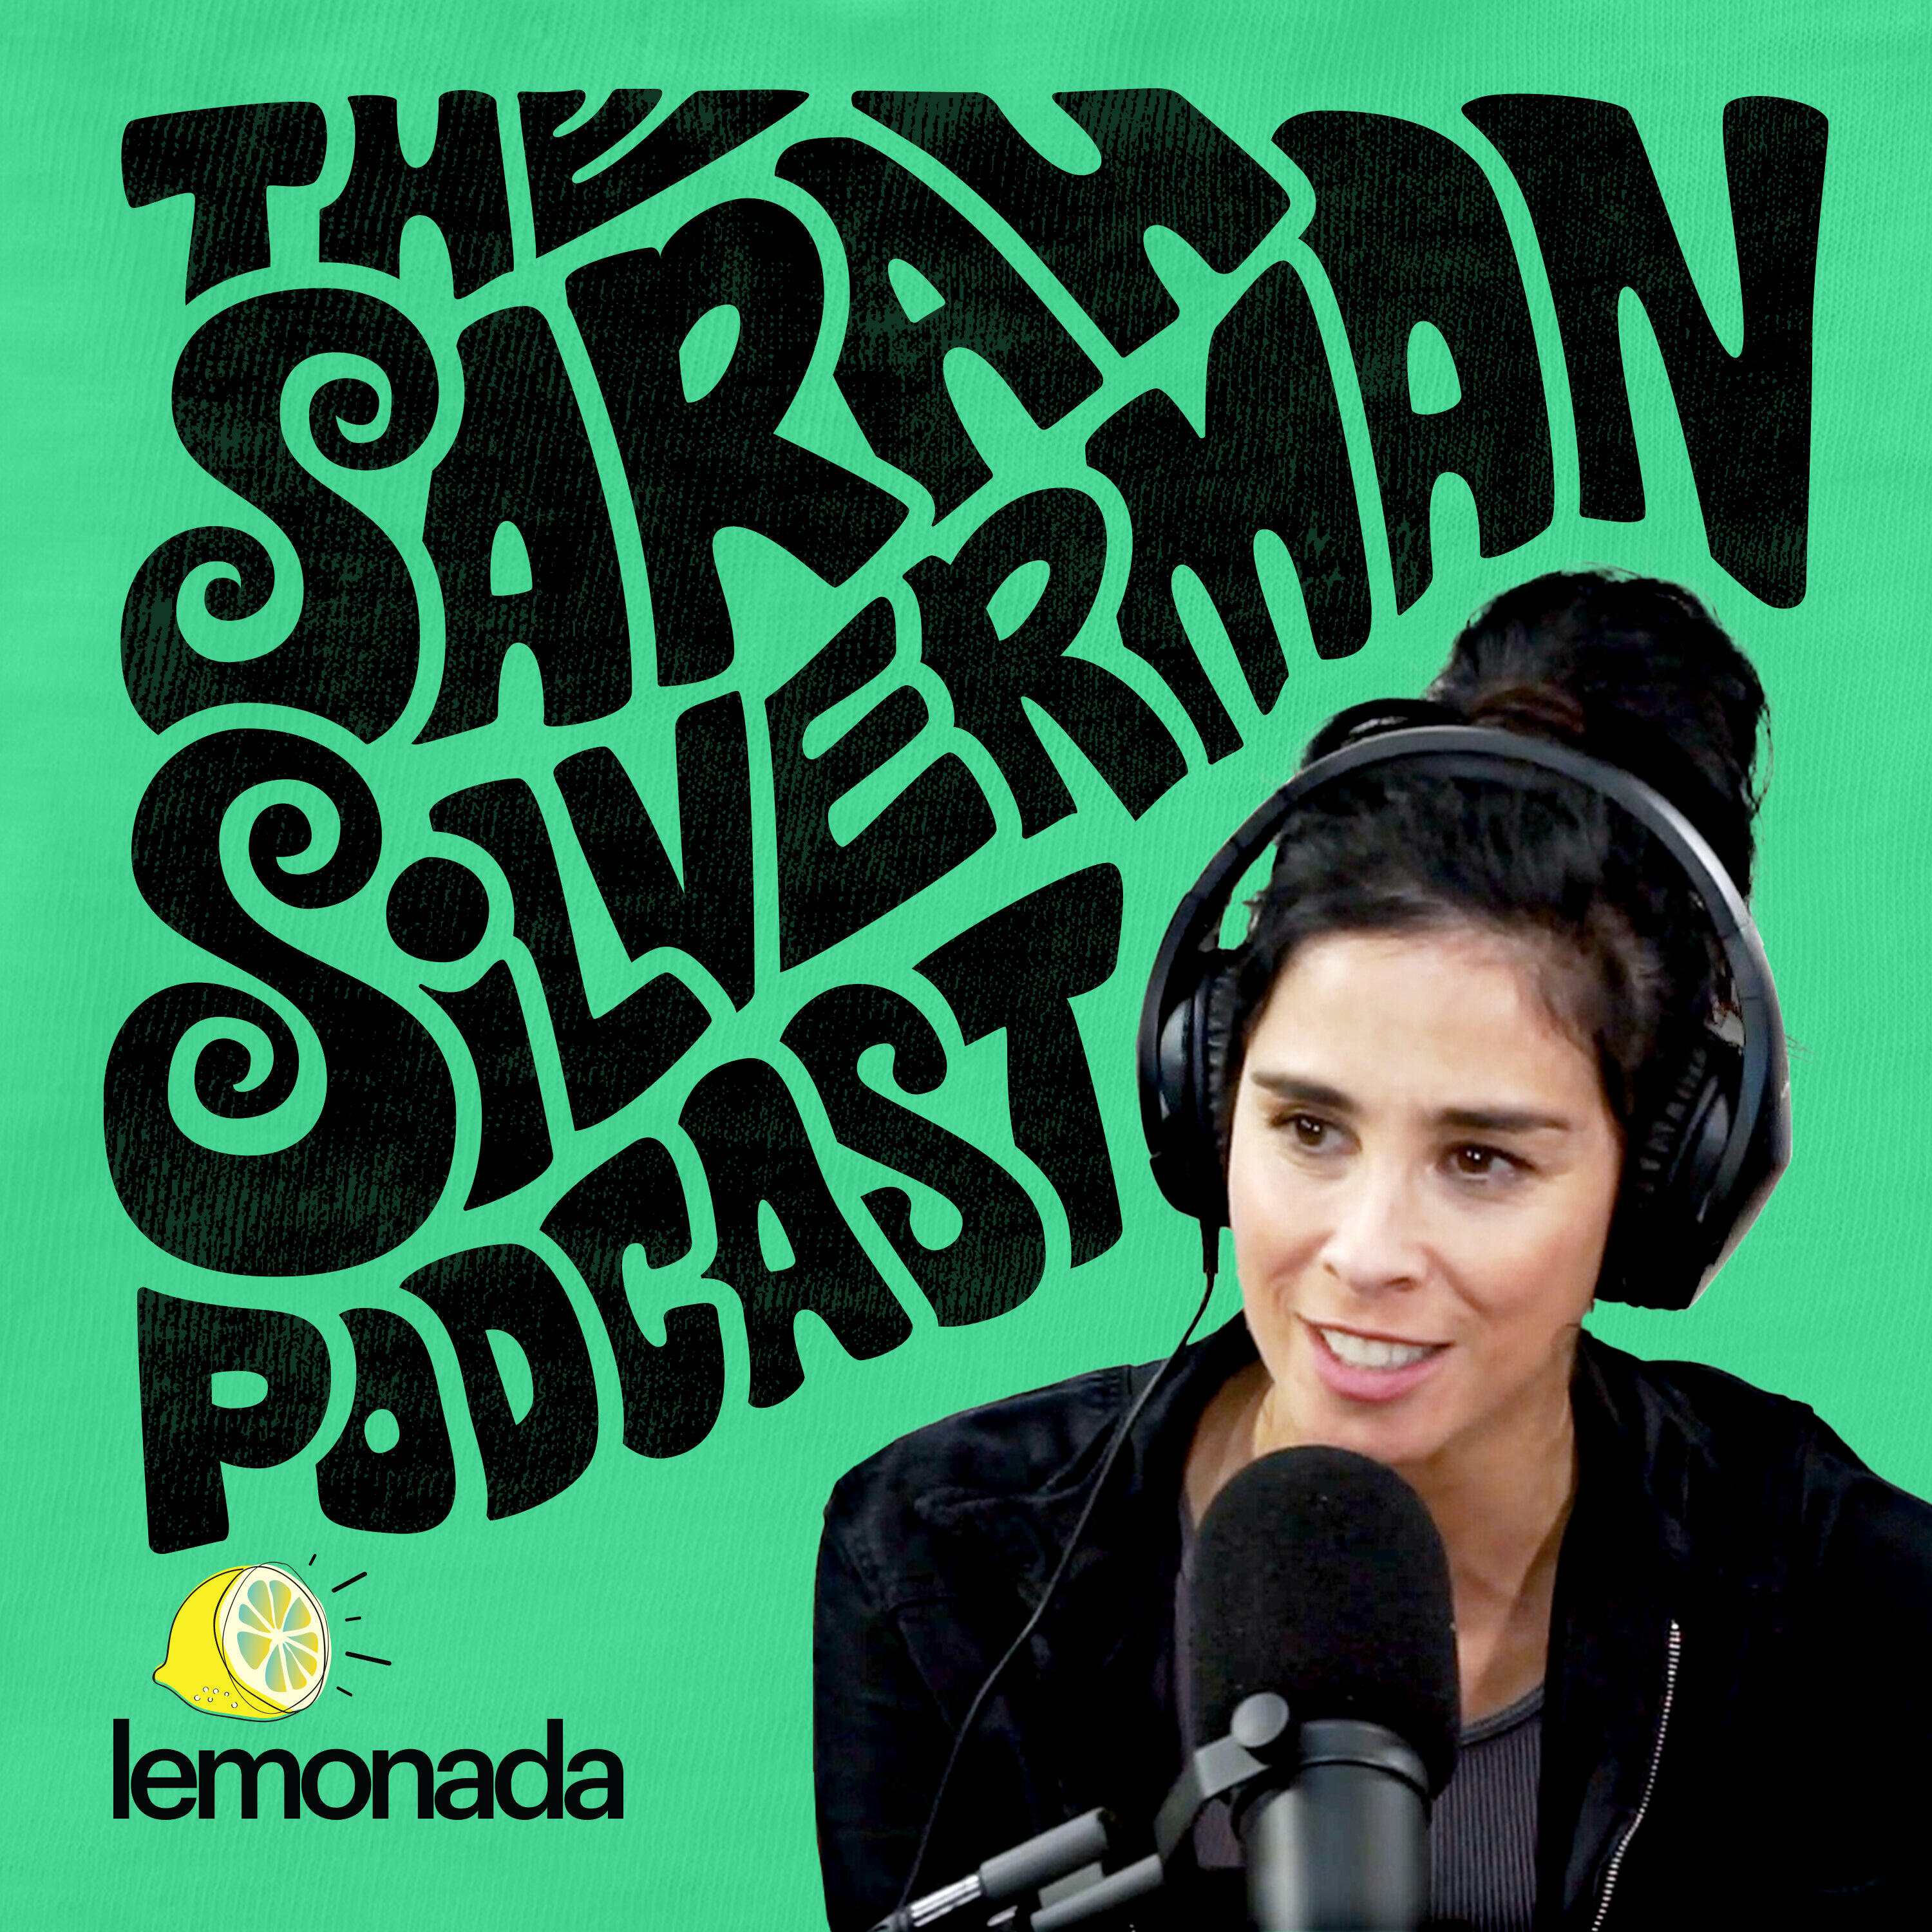 Sarah C Show Podcast